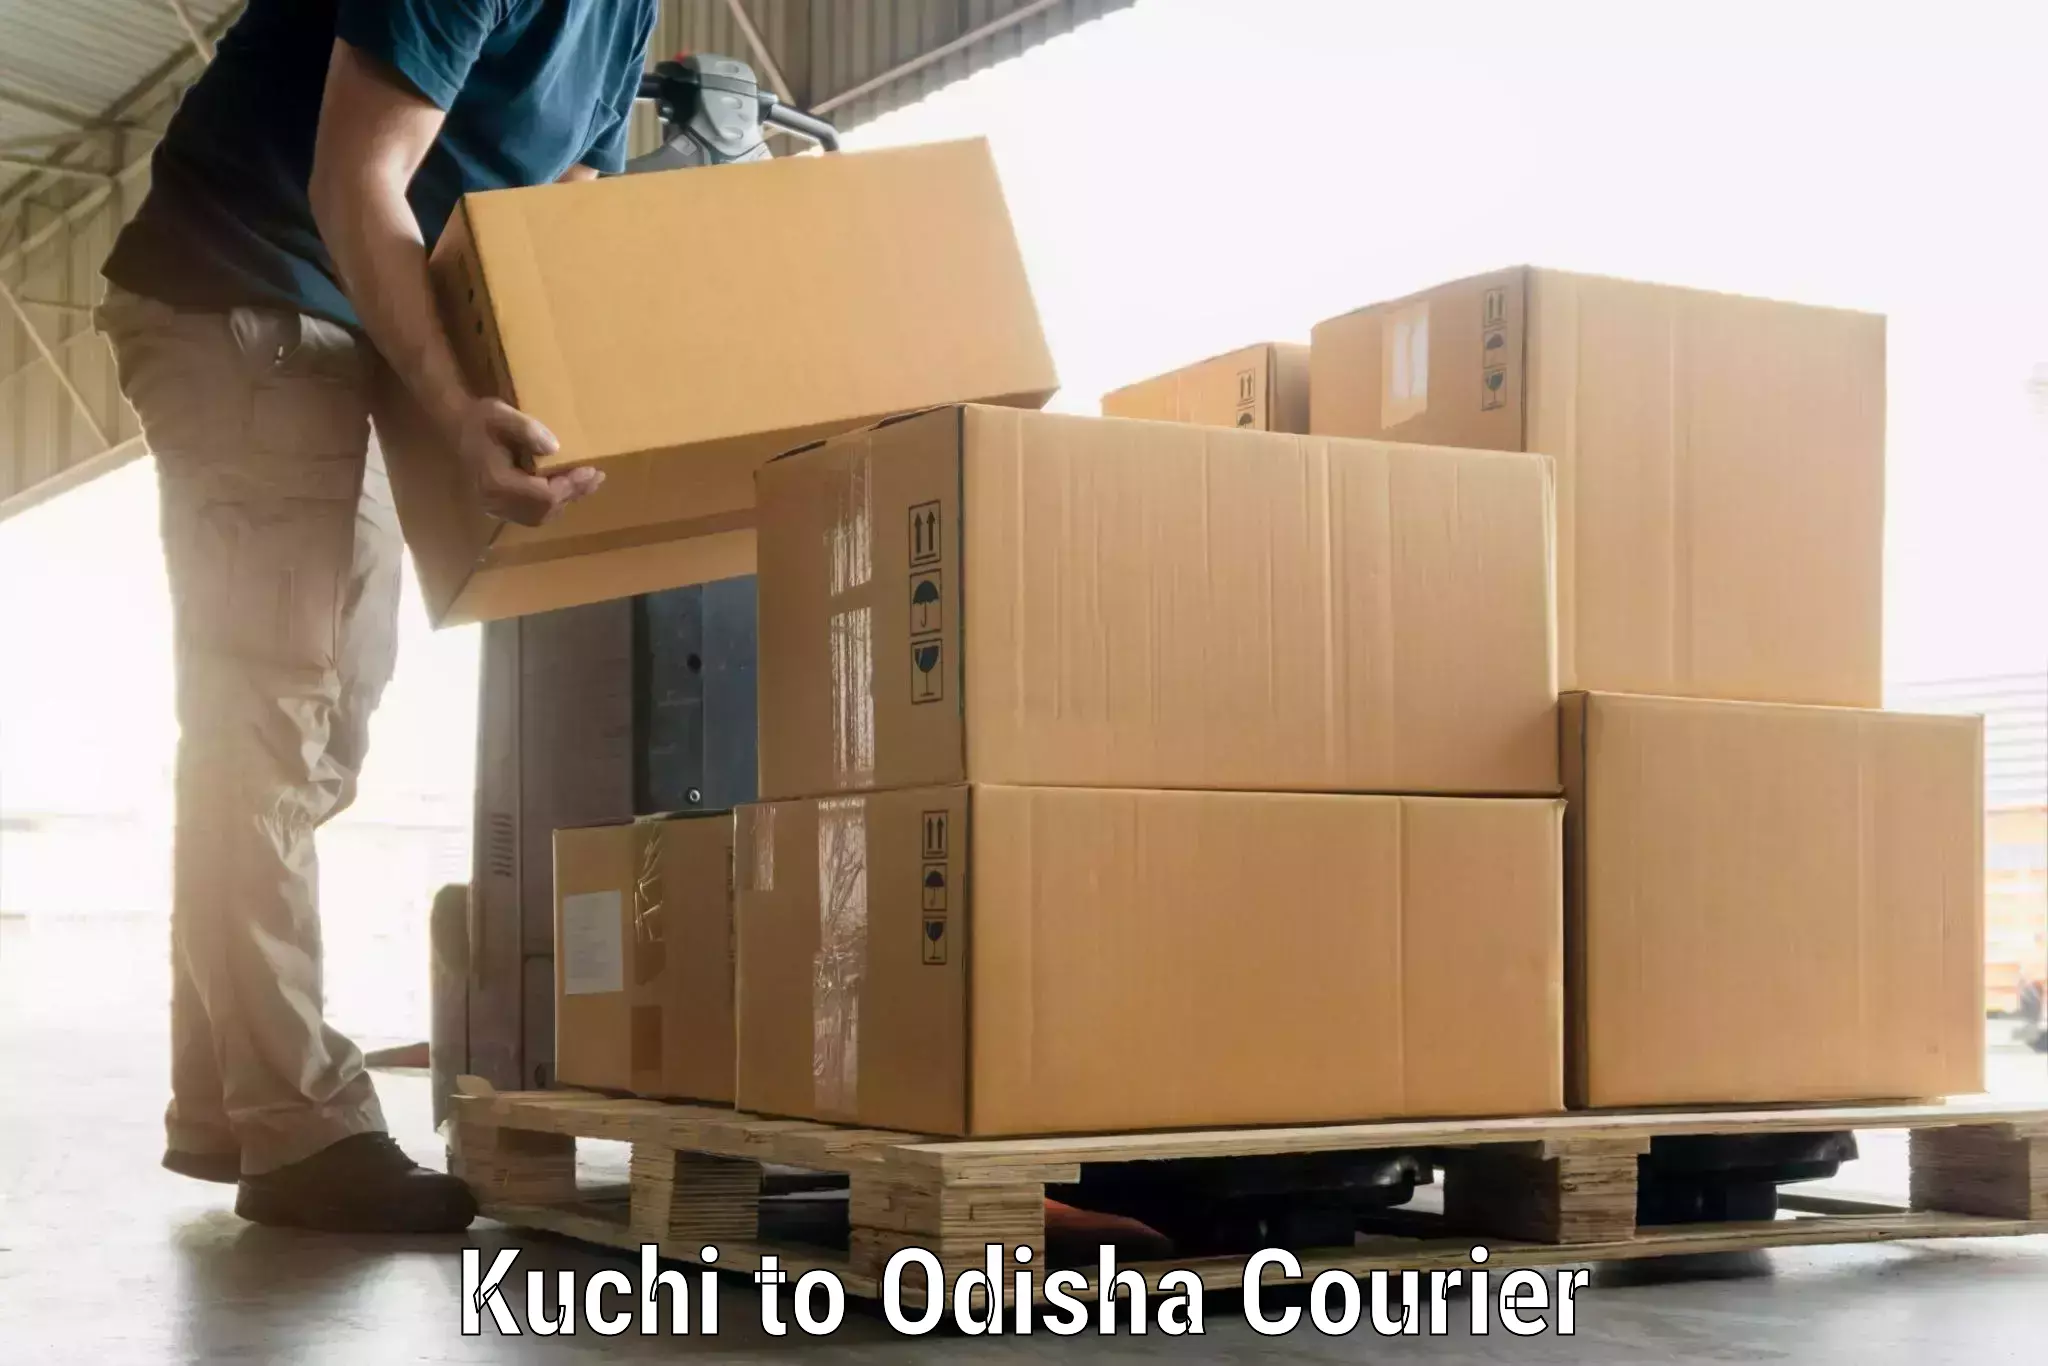 Automated luggage transport Kuchi to Mathili